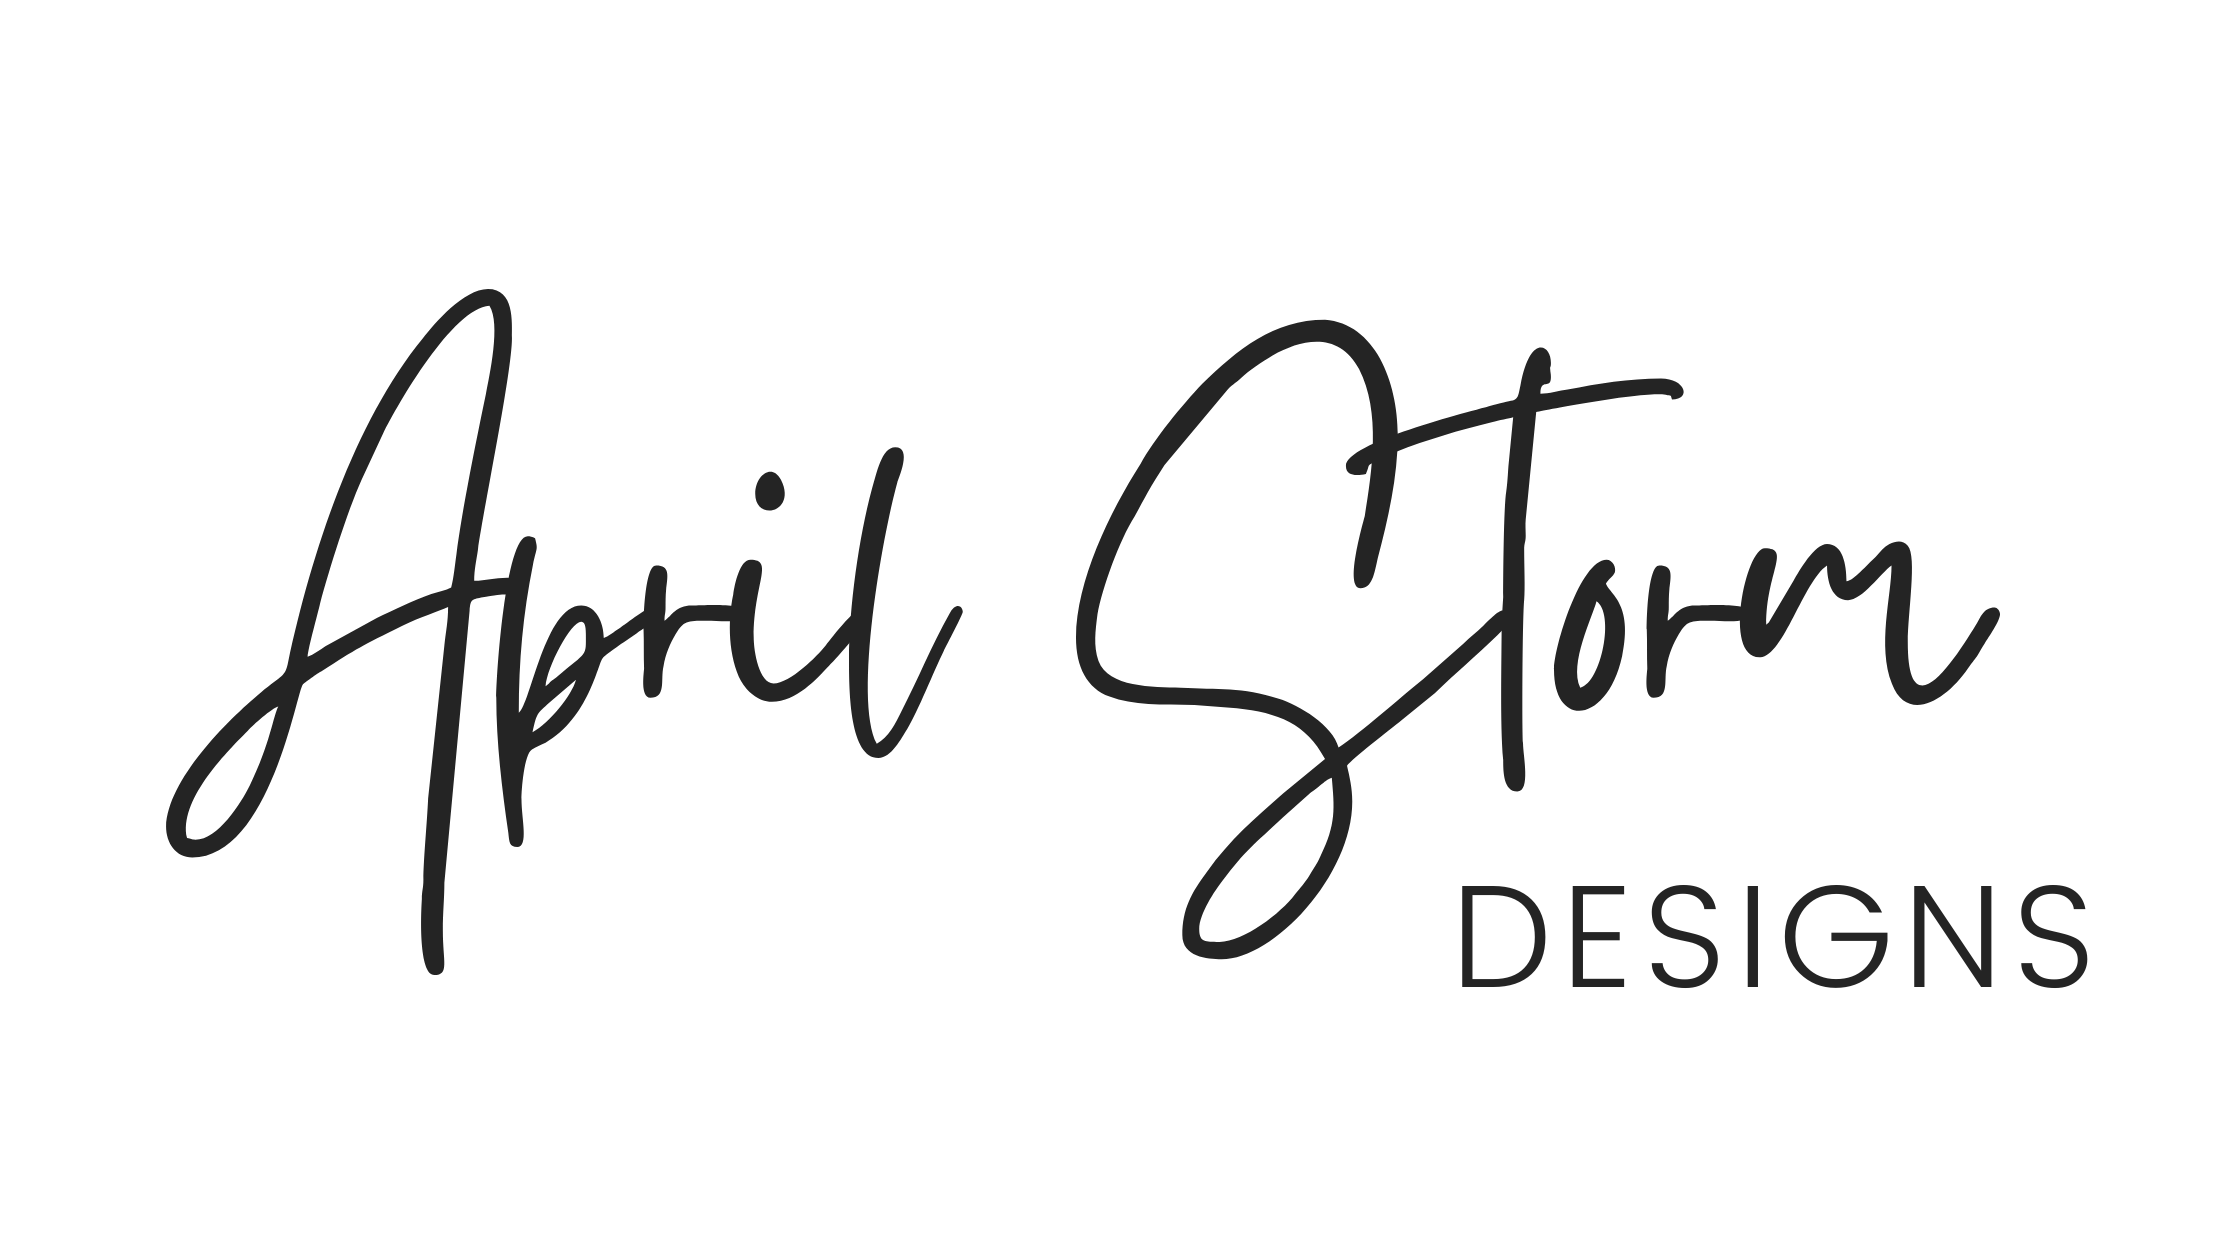 April Storm Designs